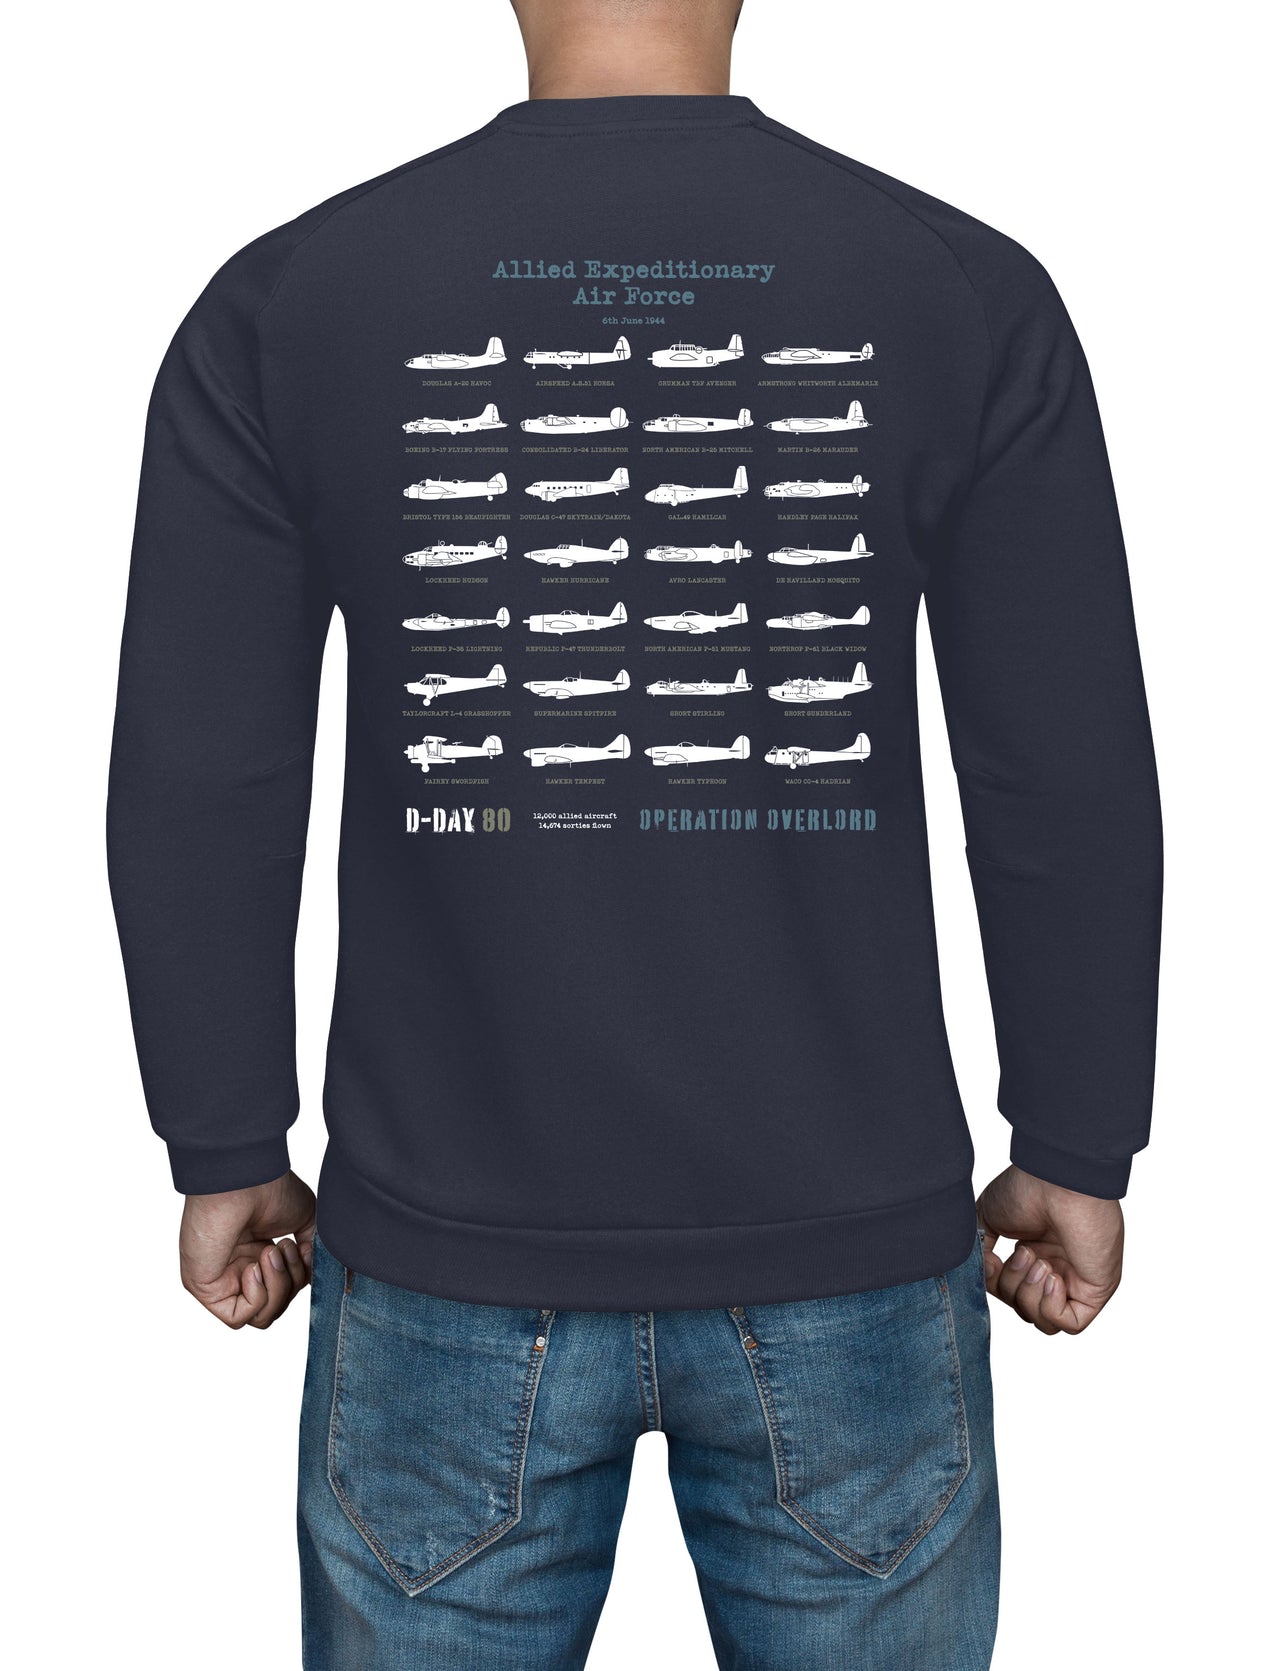 D-Day C-47 Skytrain - Sweat Shirt